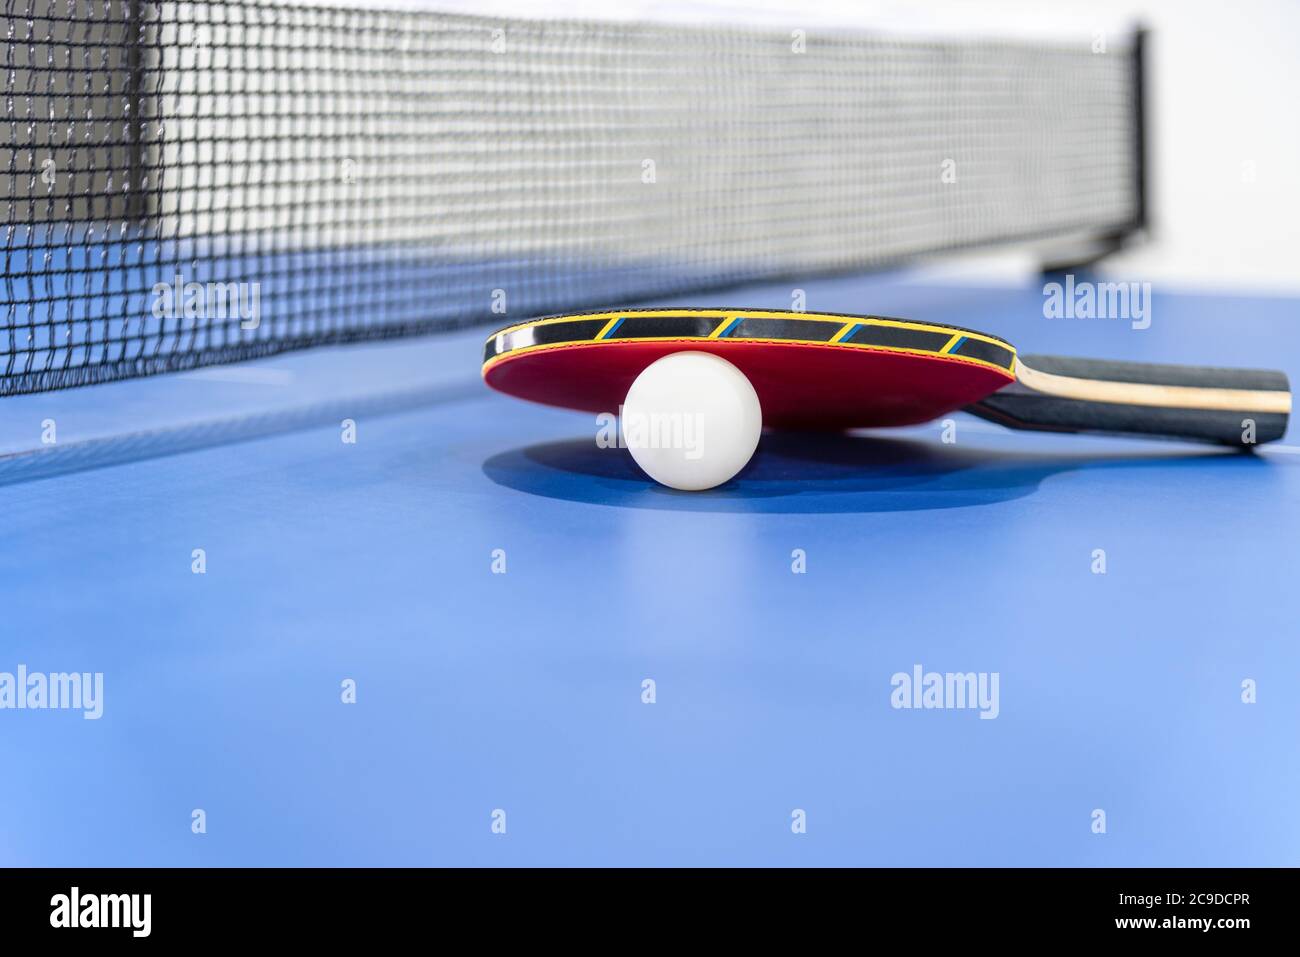 Tapeta roja de tenis de mesa y una pelota blanca en la mesa de ping pong azul con una red negra, la paleta de tenis de mesa es un equipo de competición deportiva i Foto de stock